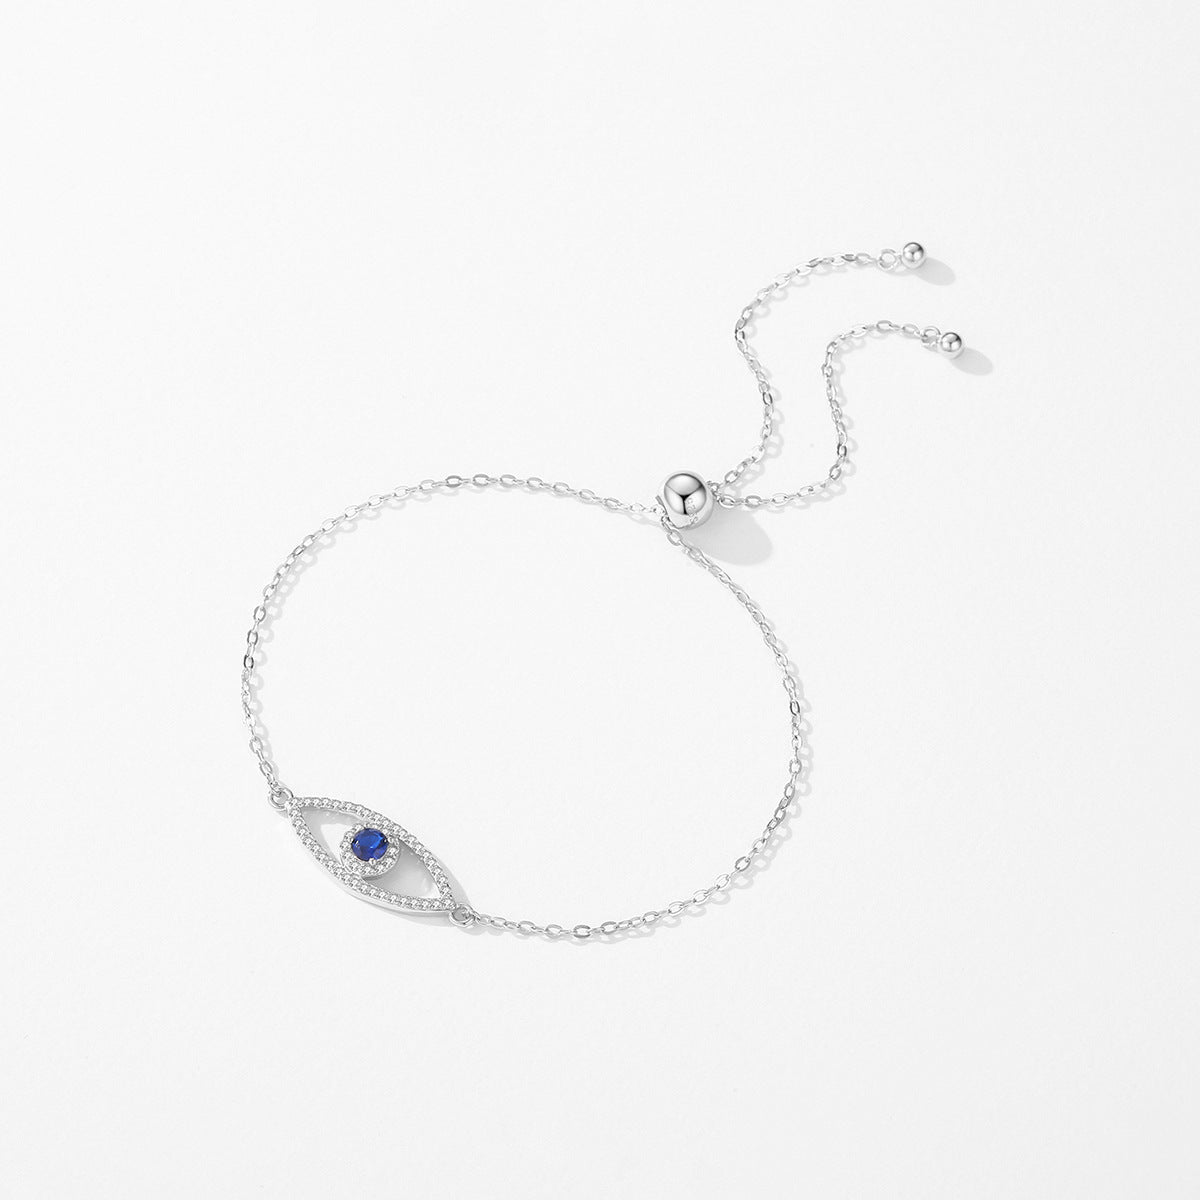 Sterling Silver Blue Eye Bracelet with Zircon Gems